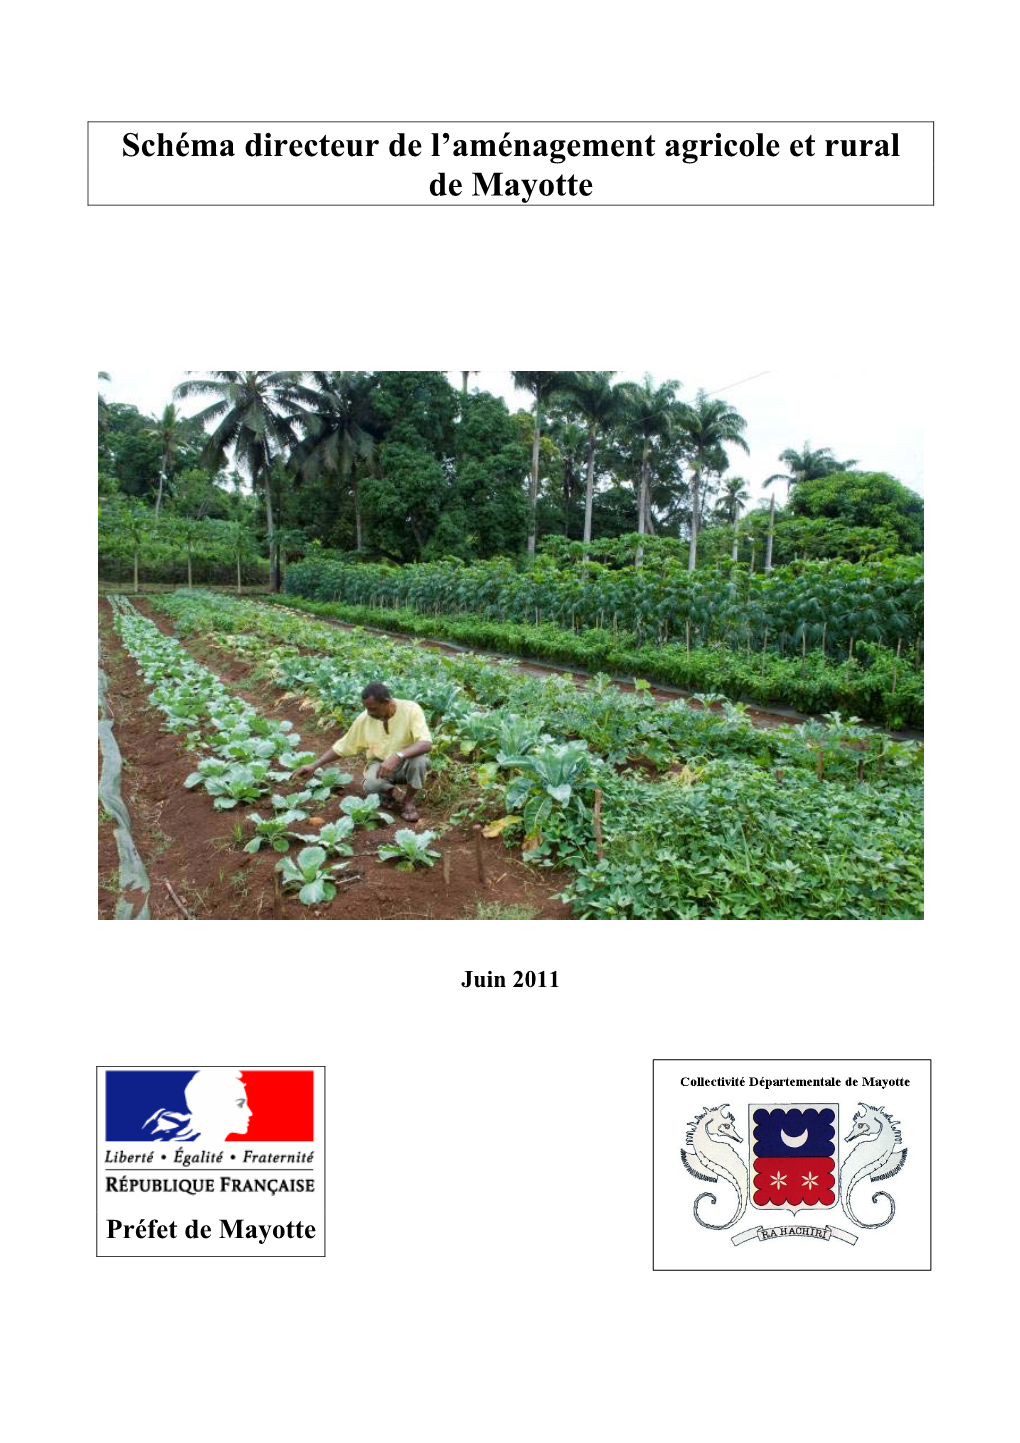 Schéma Directeur De L'aménagement Agricole Et Rural De Mayotte (SDAARM)